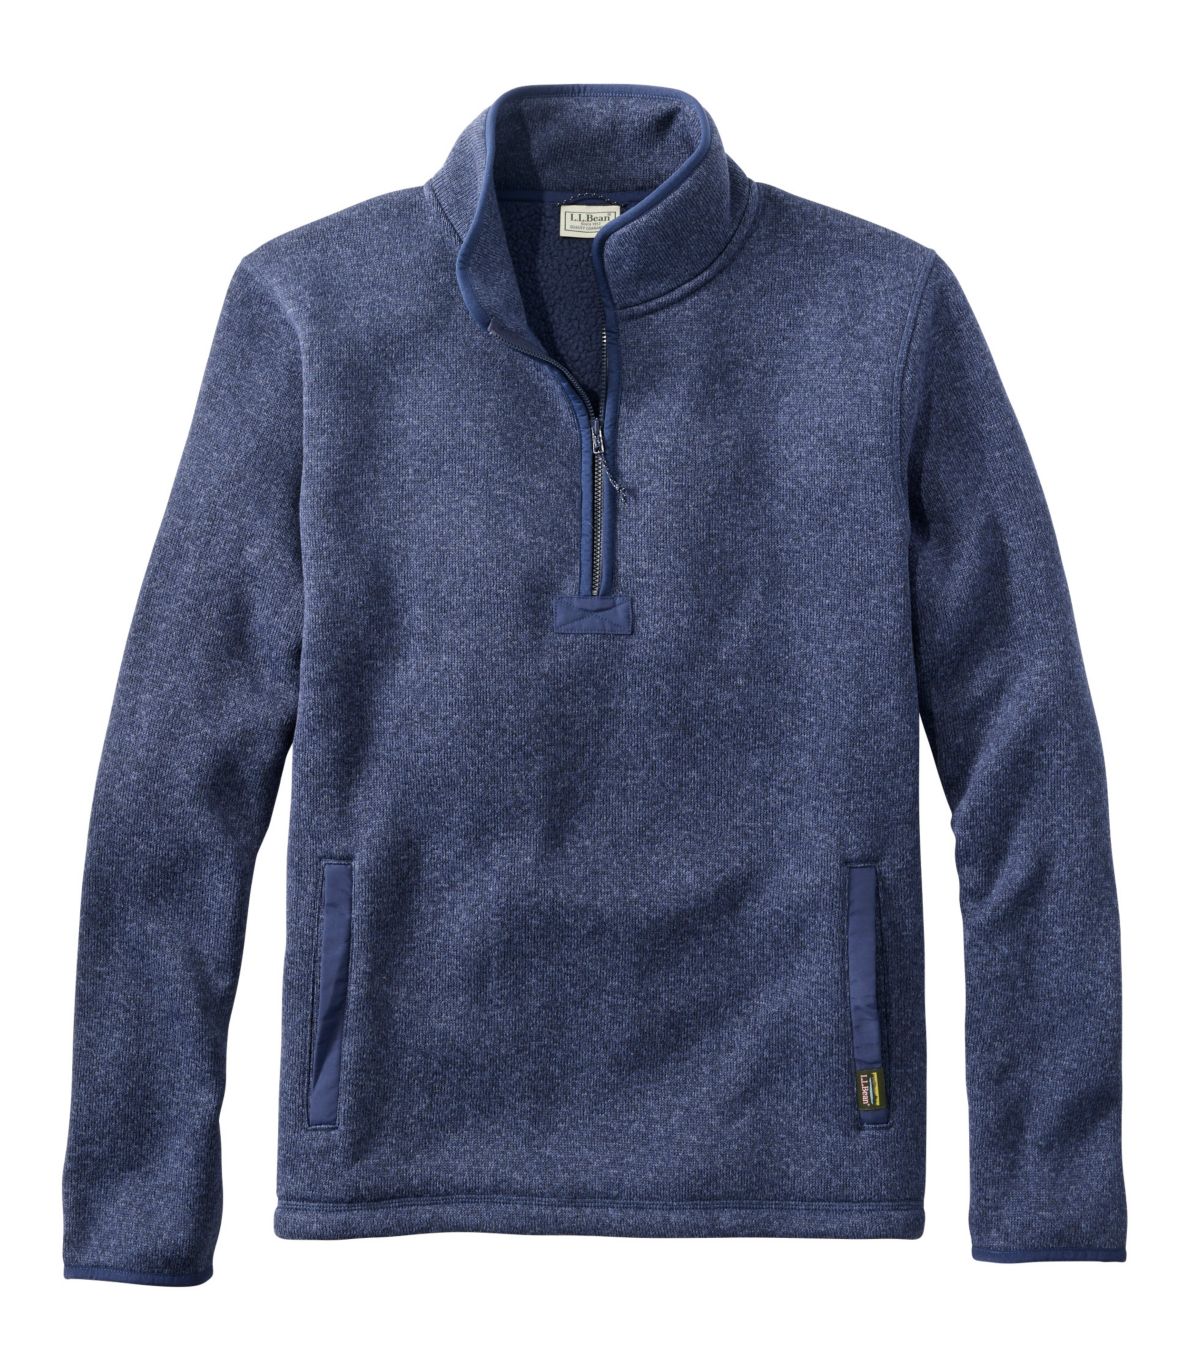 Men's Bean's Sweater Fleece Half-Zip Pullover